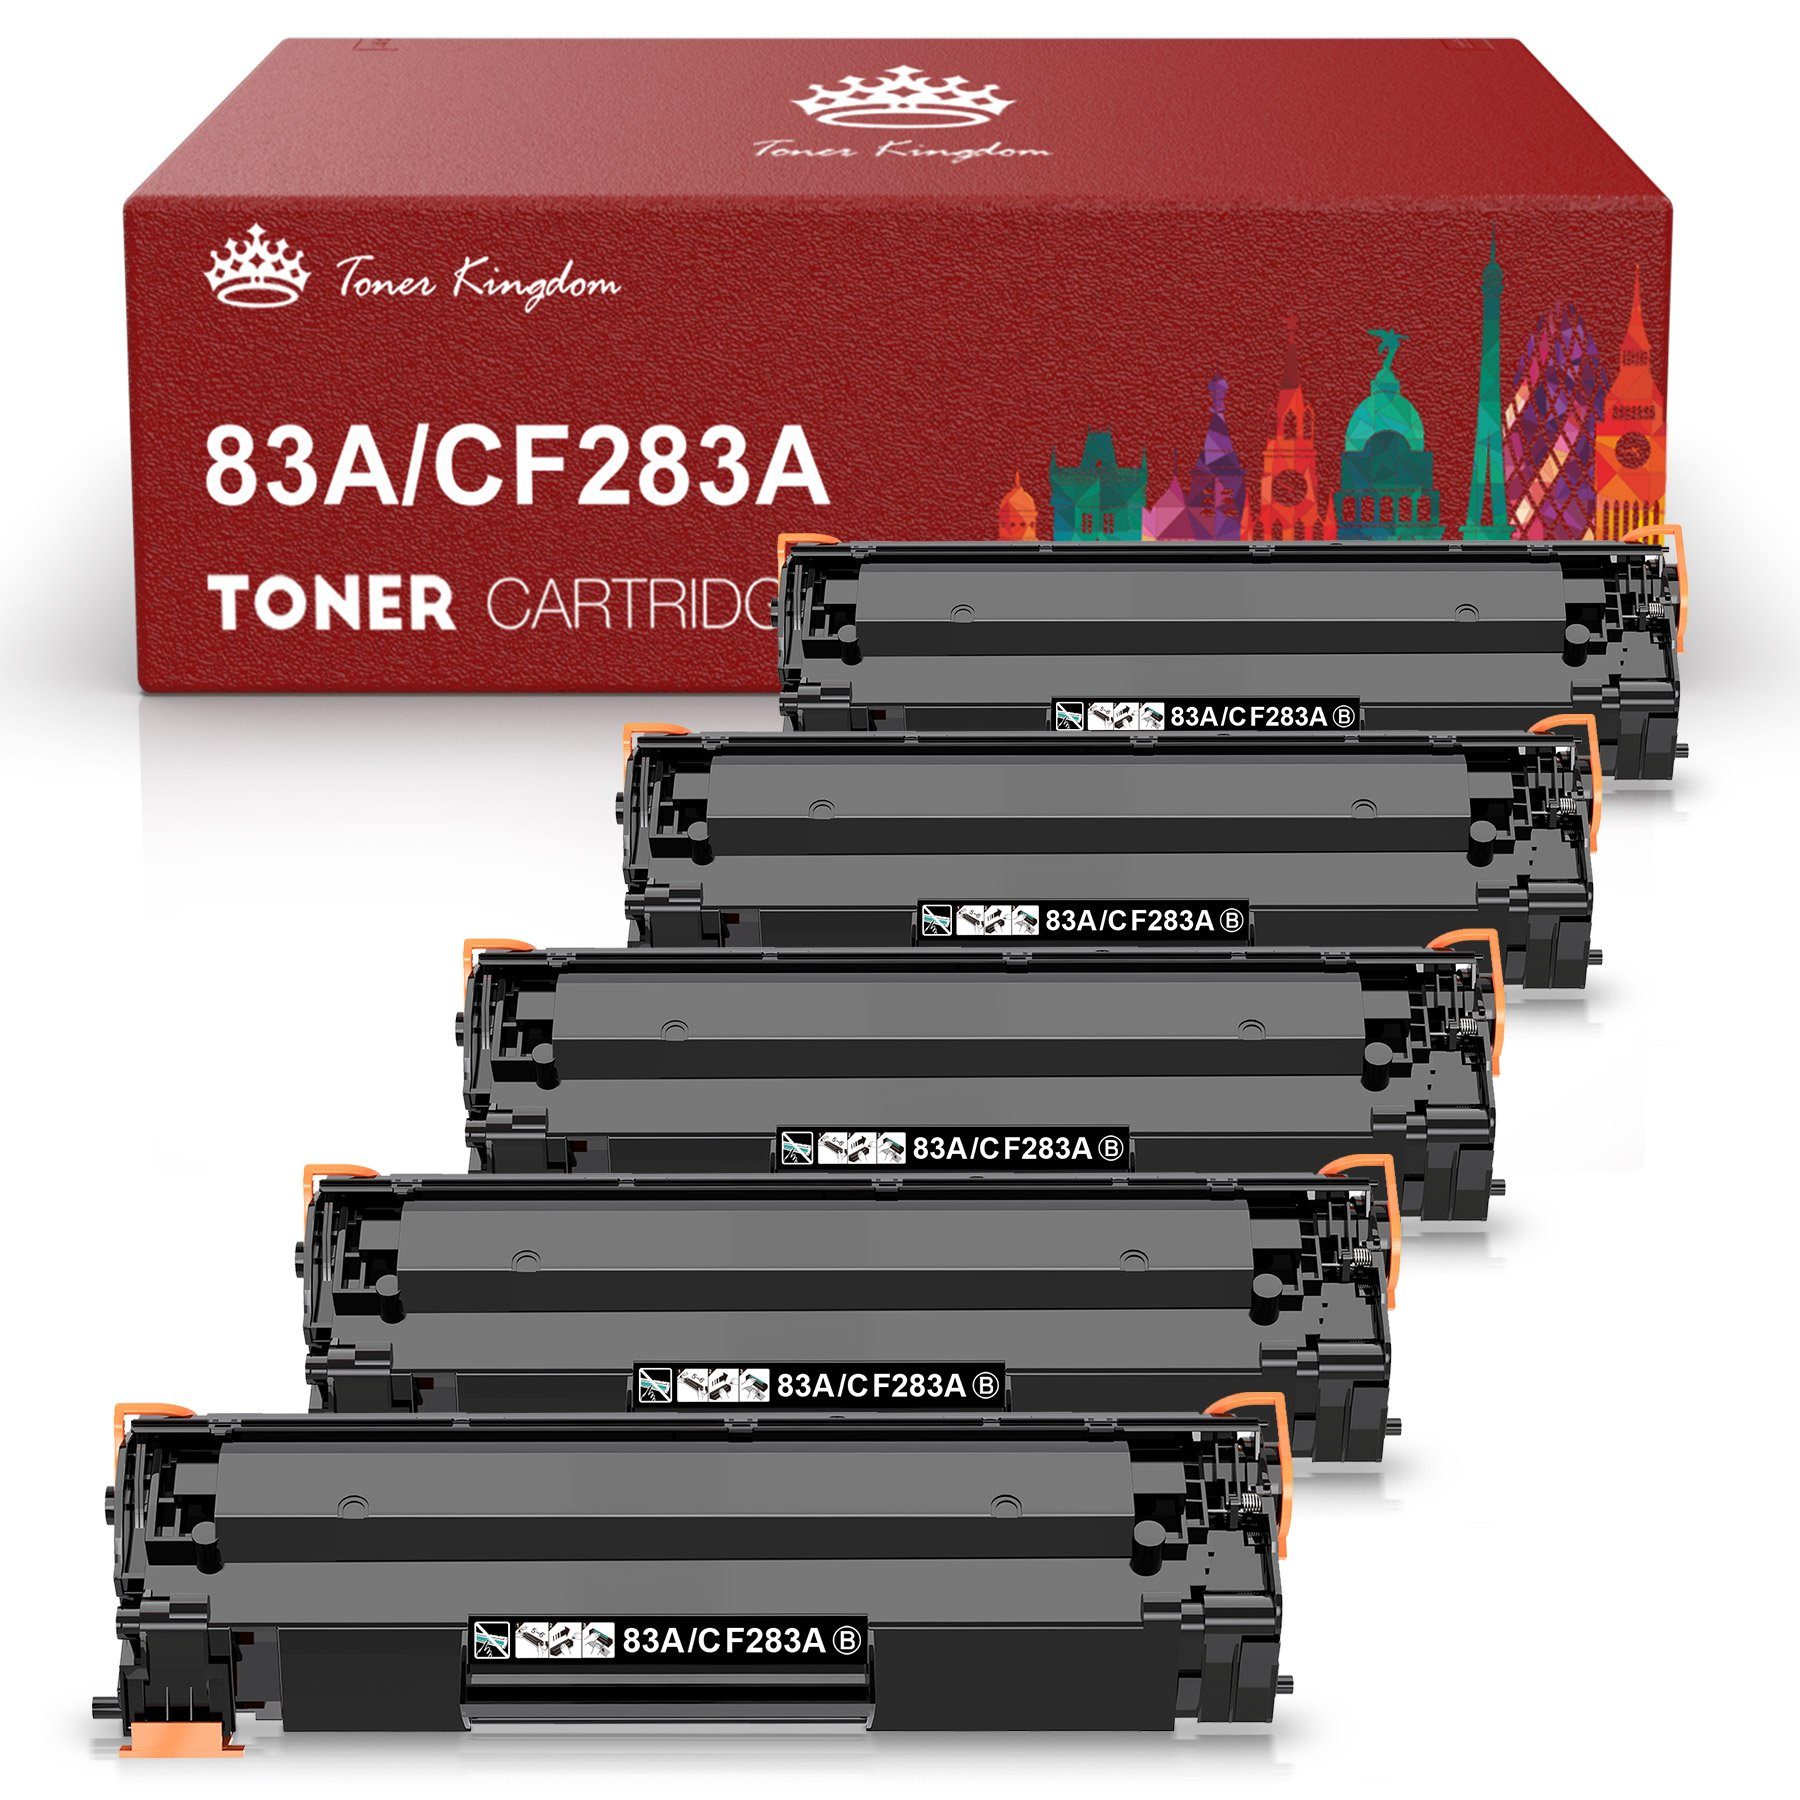 Toner Kingdom Tonerpatrone für HP CF283A 83A CF 283A toner MFP M127fn M201n, laserjet pro mfp m125nw m201dw m127fs